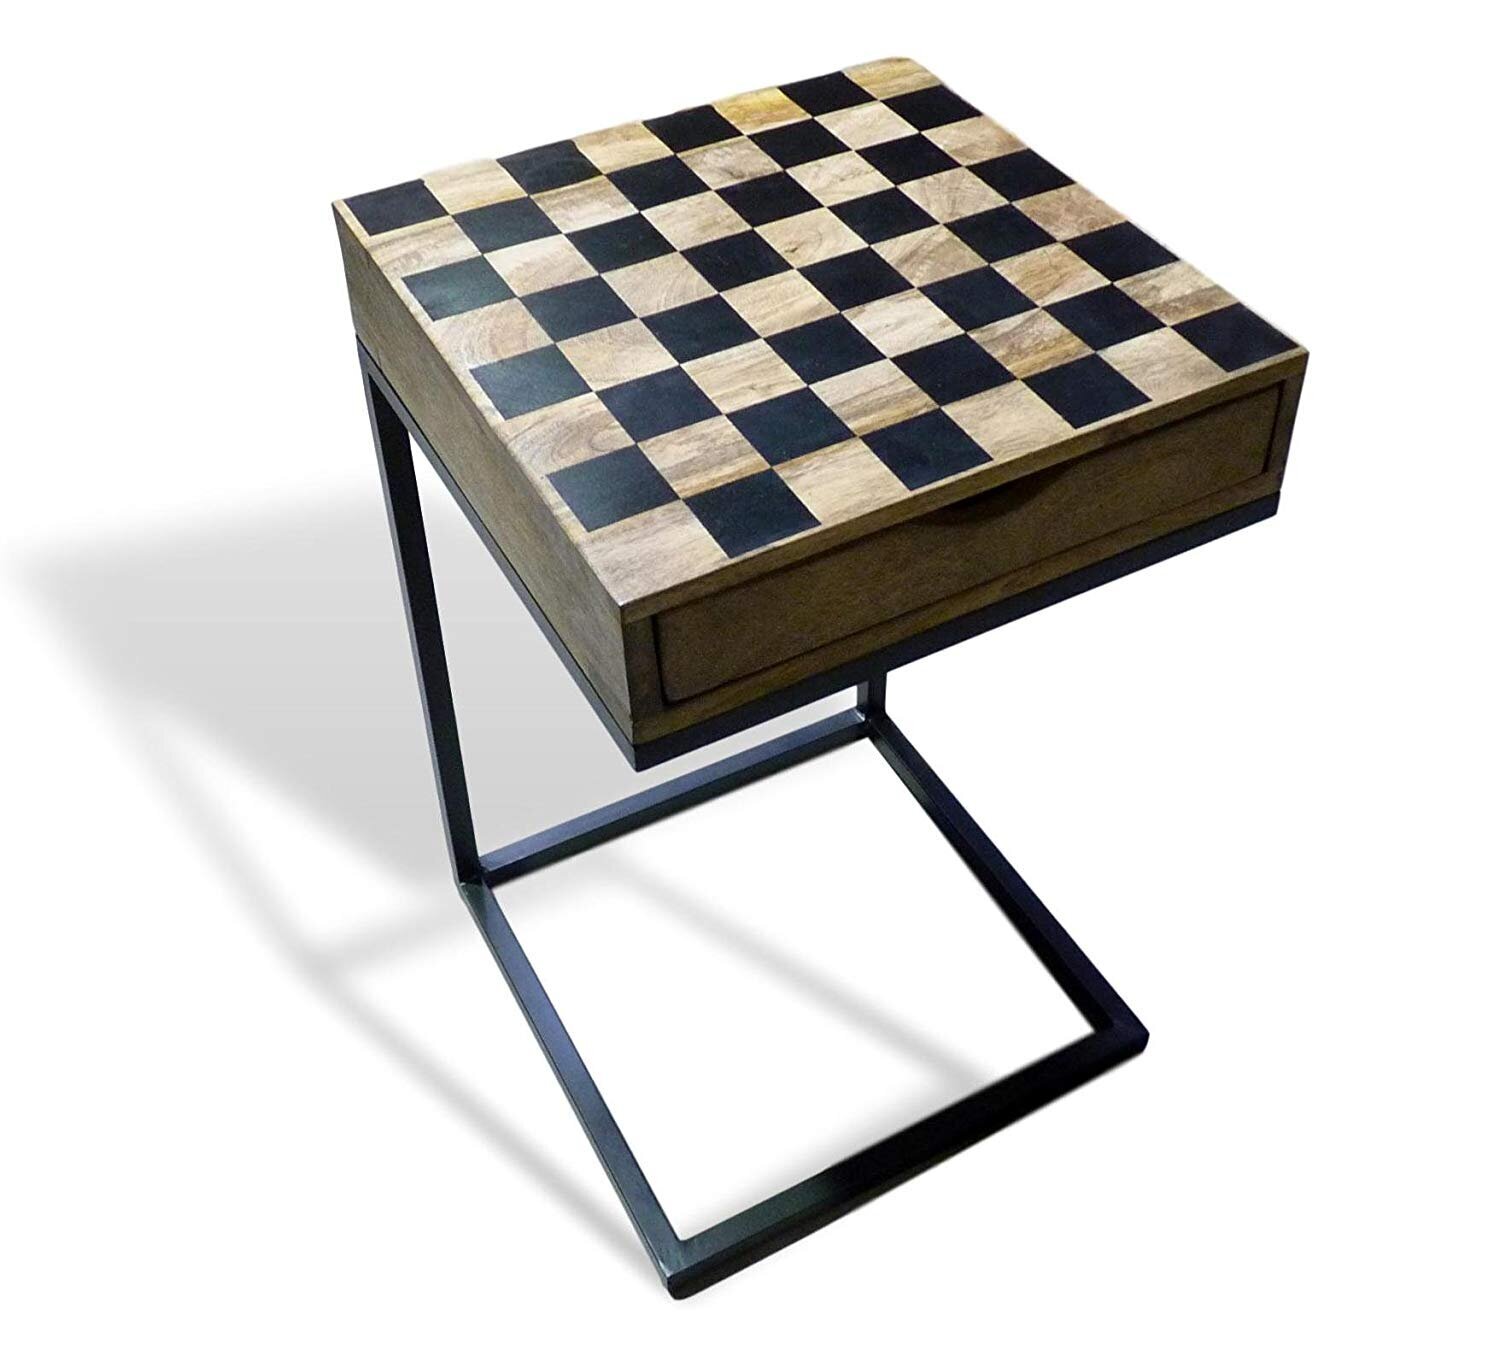 16” Manhattan Chess Table